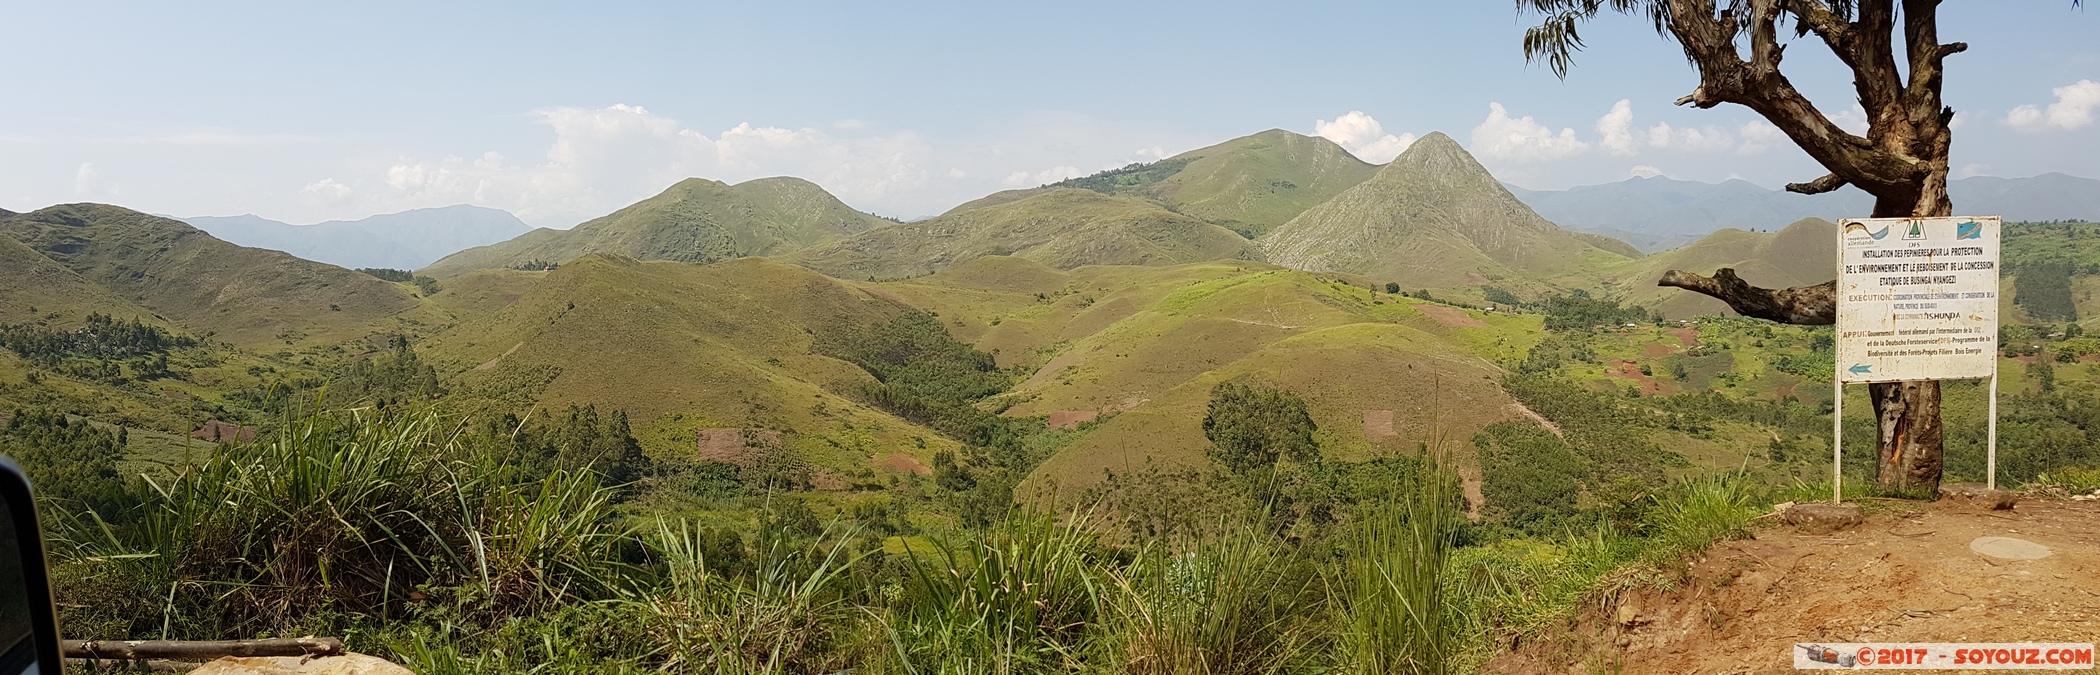 Sud Kivu - Route des Escarpements - panorama
Mots-clés: COD geo:lat=-2.69457037 geo:lon=28.89516395 geotagged Nyagezi République Démocratique du Congo Sud-Kivu Route des Escarpements panorama